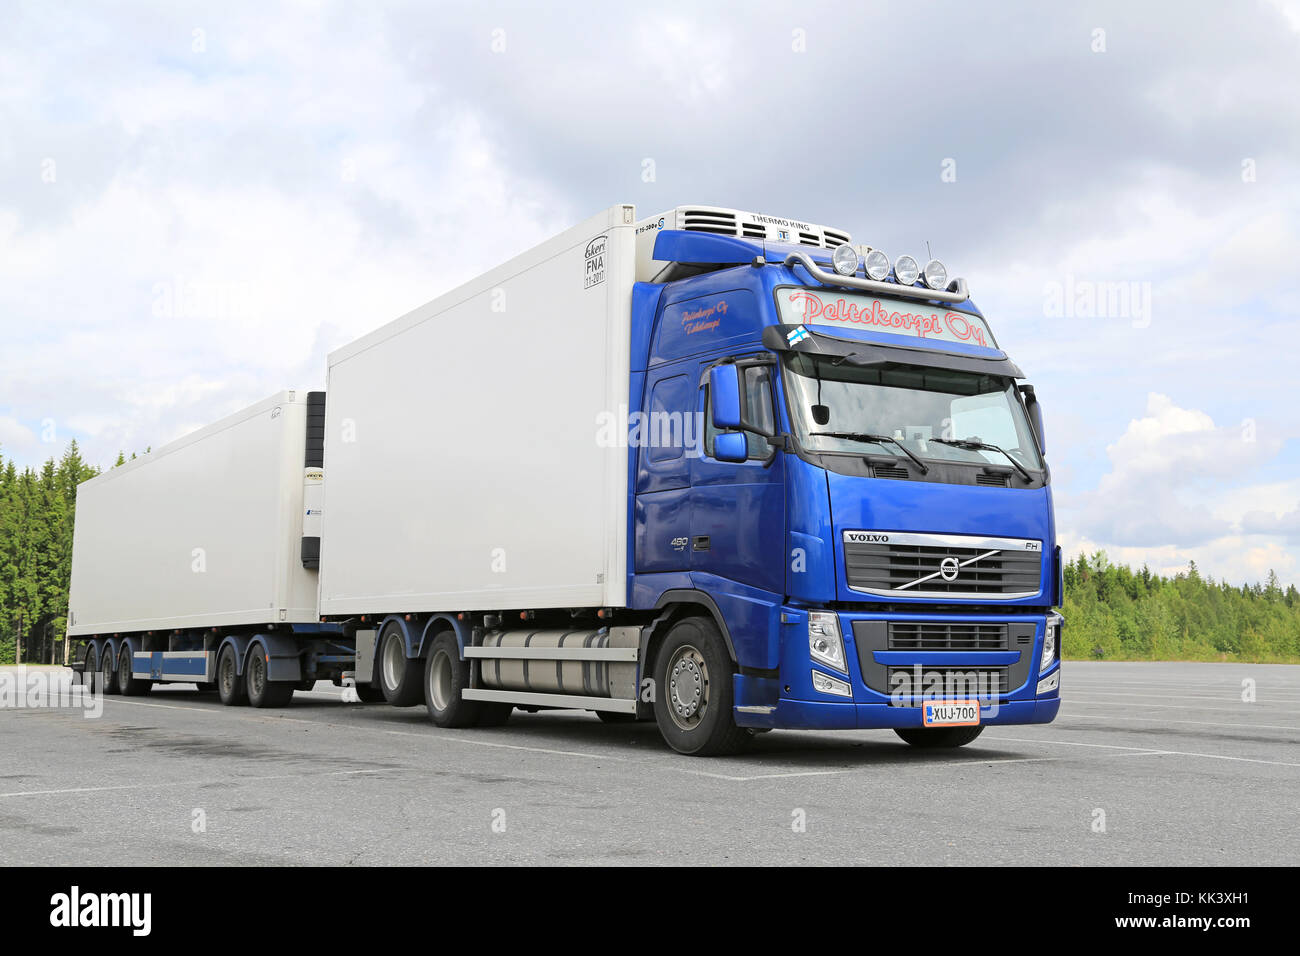 Hirvaskangas, Finlandia - 20 giugno 2015: blu volvo fh a temperatura controllata carrello parcheggiato. camion refrigerati può trainare un varietà di merci che richiedono Foto Stock